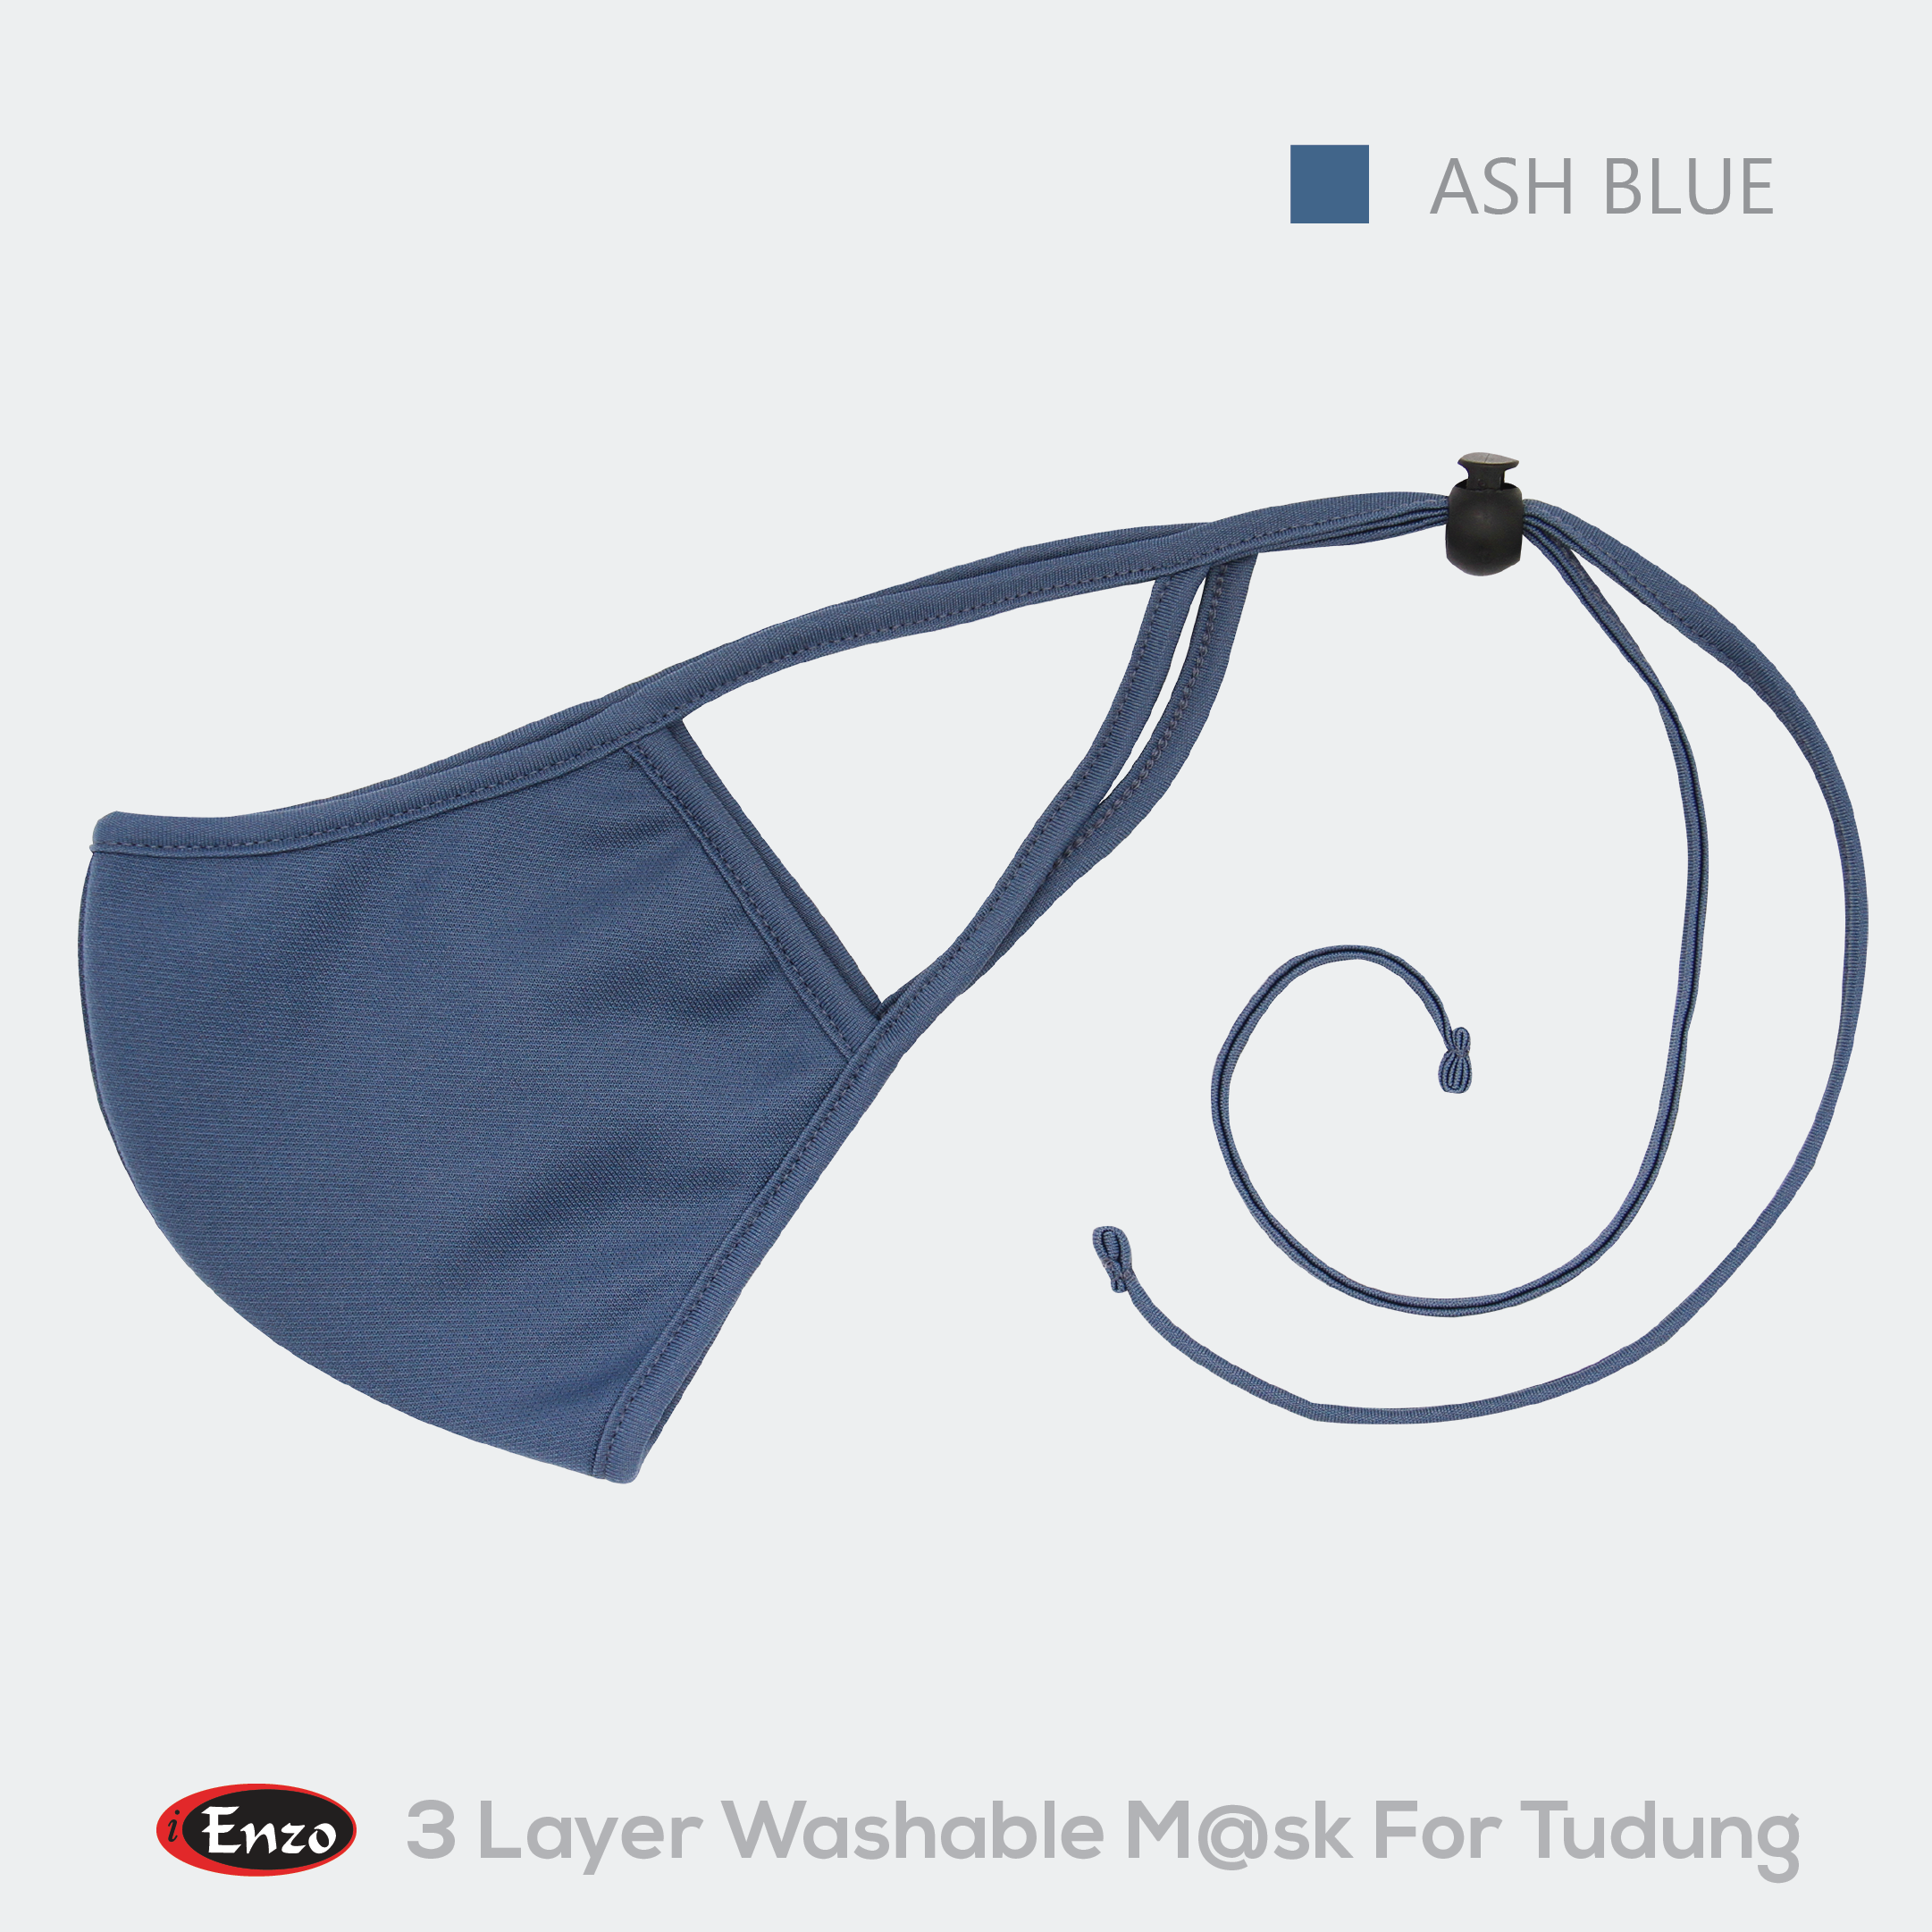 ASH BLUE